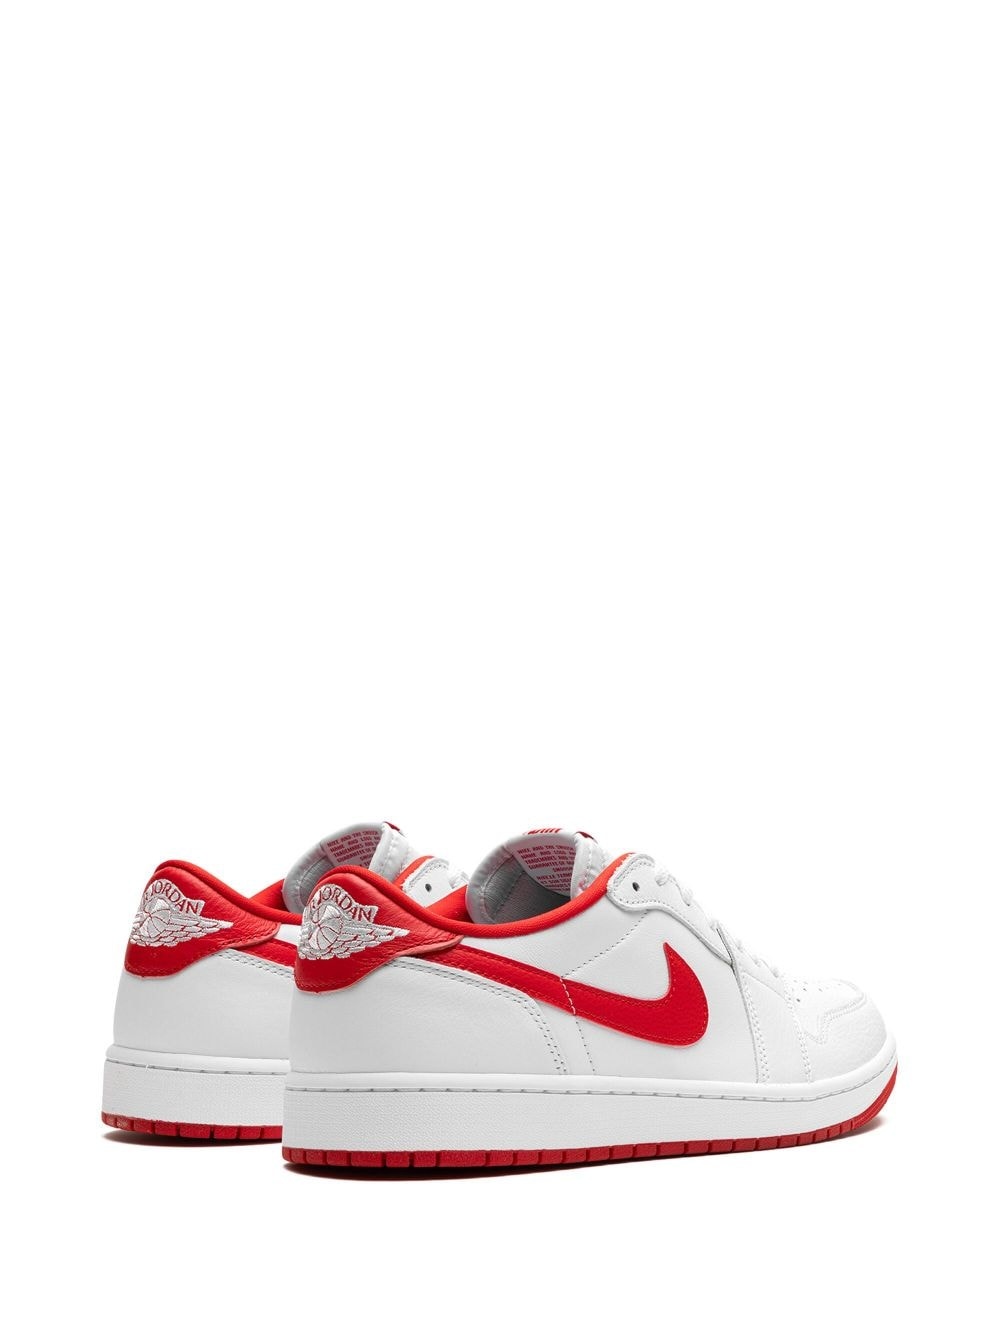 Air Jordan 1 Low OG "University Red" sneakers - 3